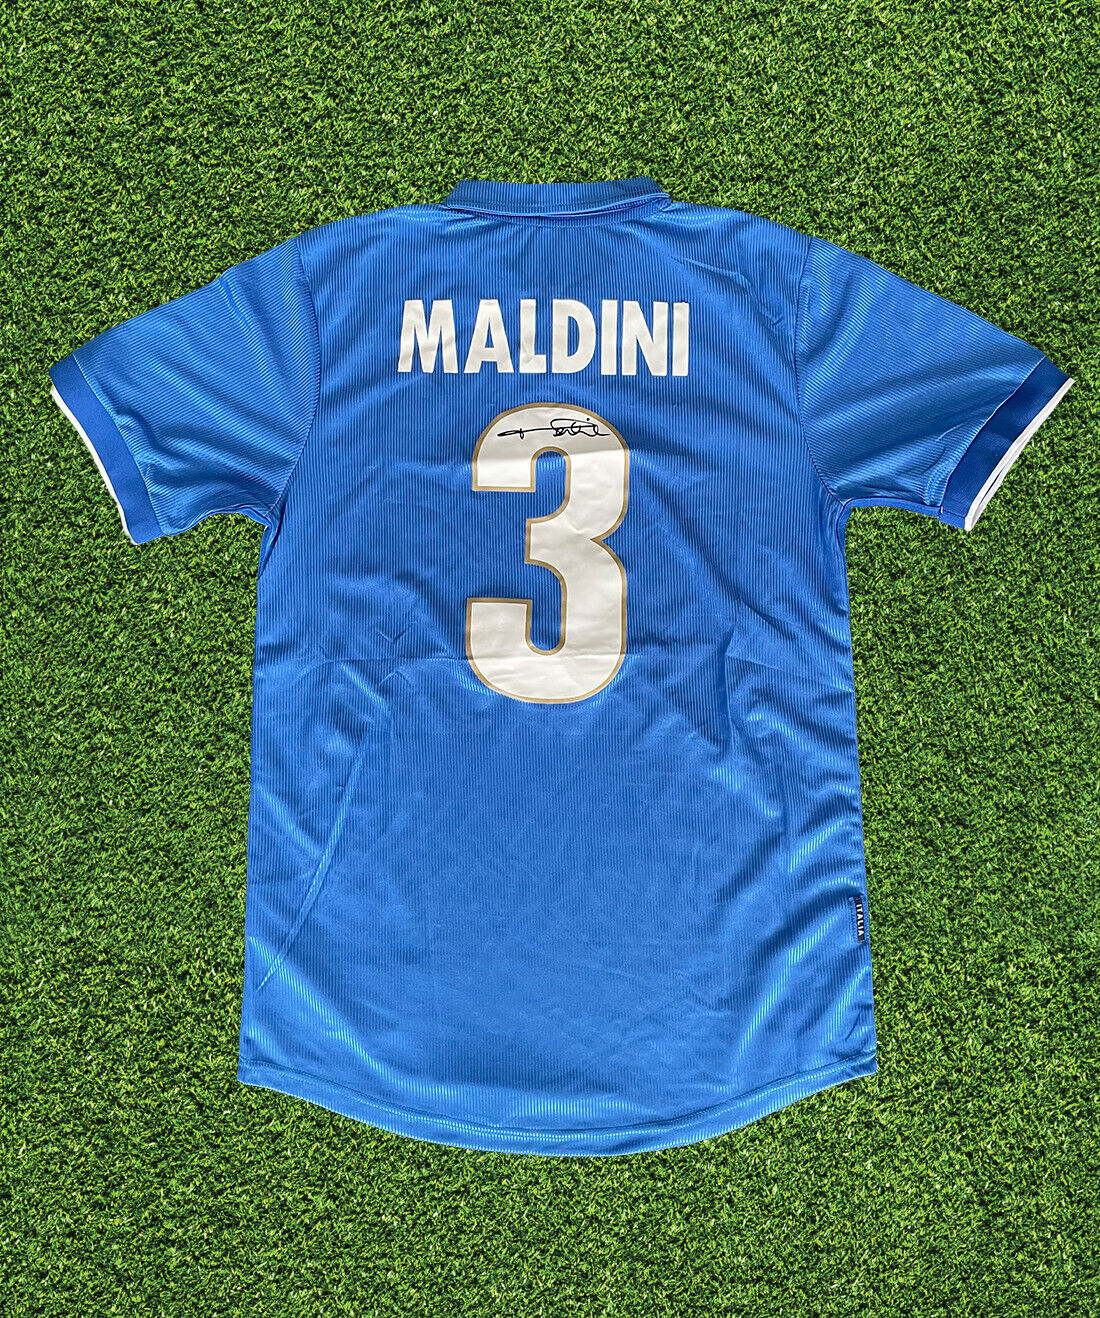 PAOLO MALDINI SIGNED RETRO ITALY WORLD CUP 98 SHIRT (AFTAL COA)